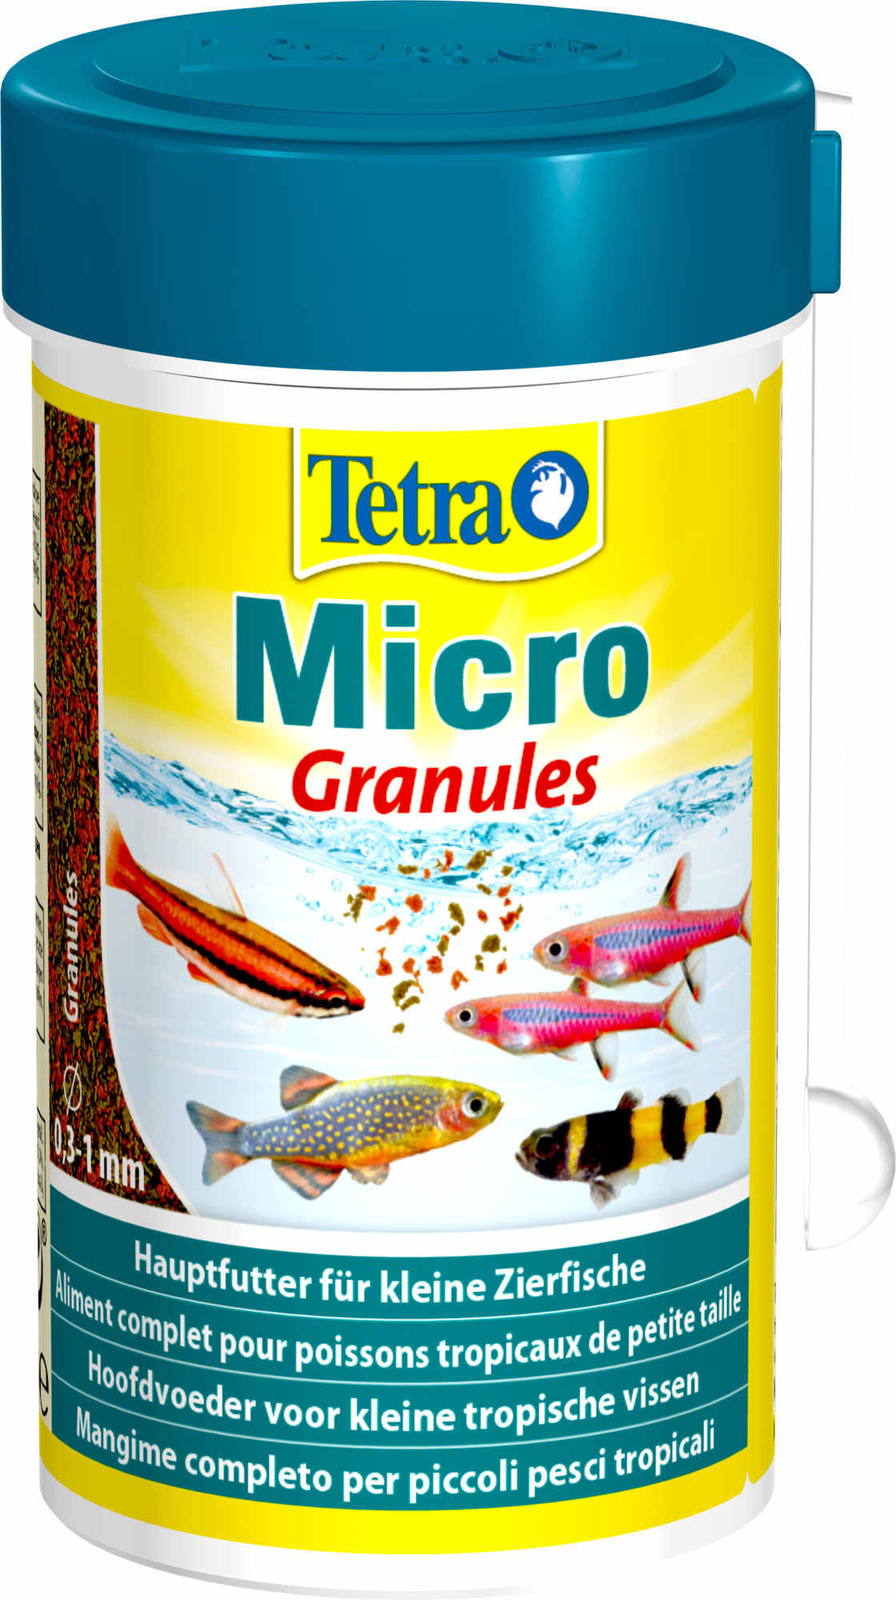 Tetra (корма) Tetra (корма) корм для всех видов мелких рыб, микрогранулы (45 г) tetra корма tetra корма корм для всех видов рыб чипсы 250 мл 20 г